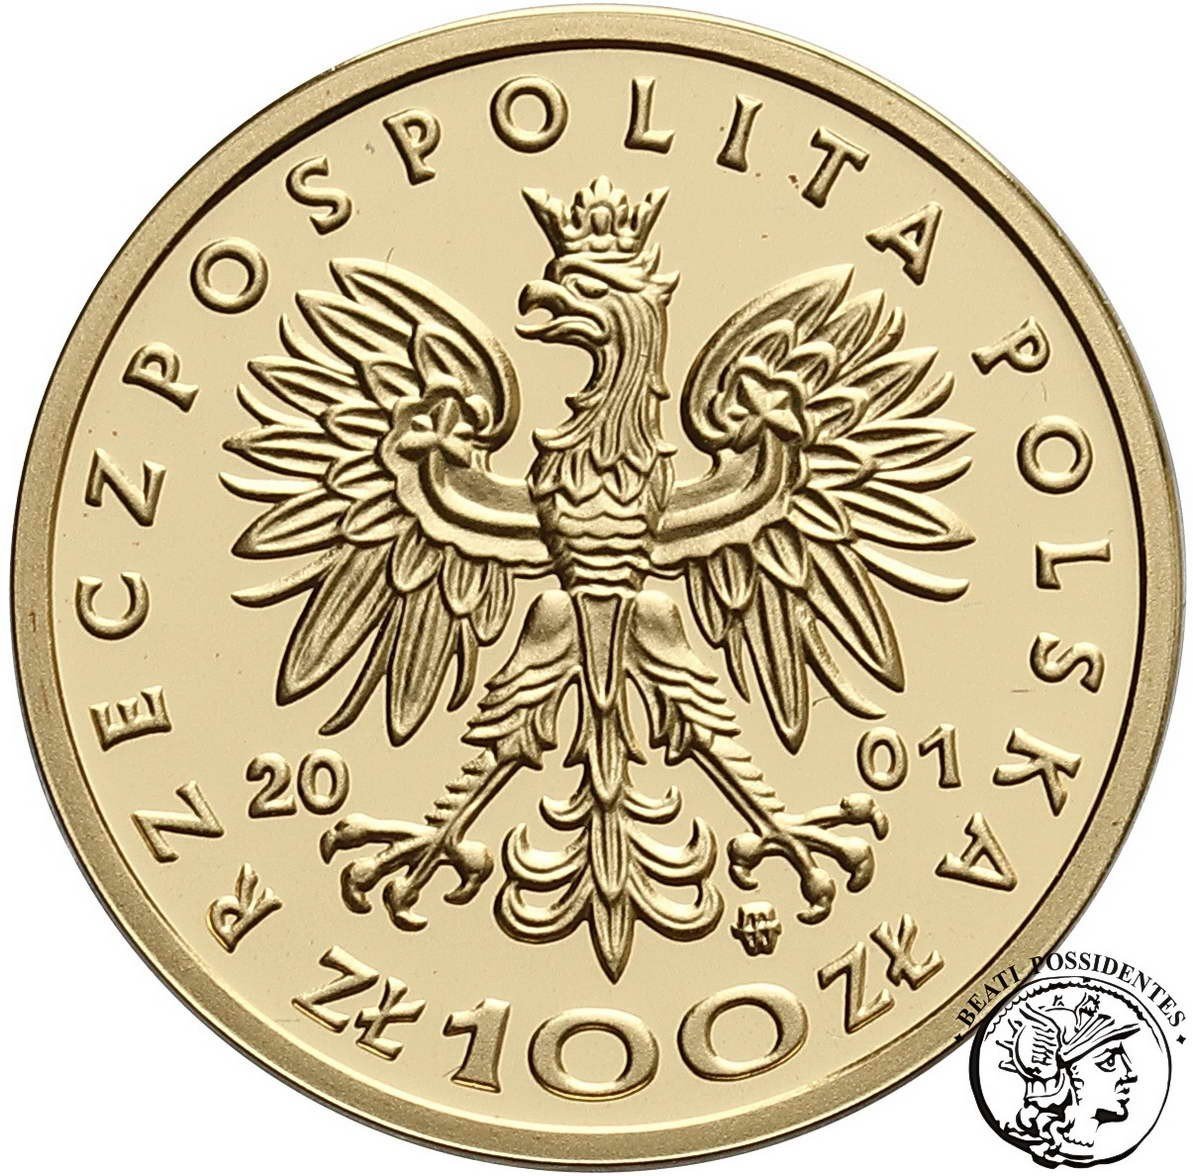 Polska III RP 100 złotych Jan III Sobieski 2001 st. L stempel lustrzany